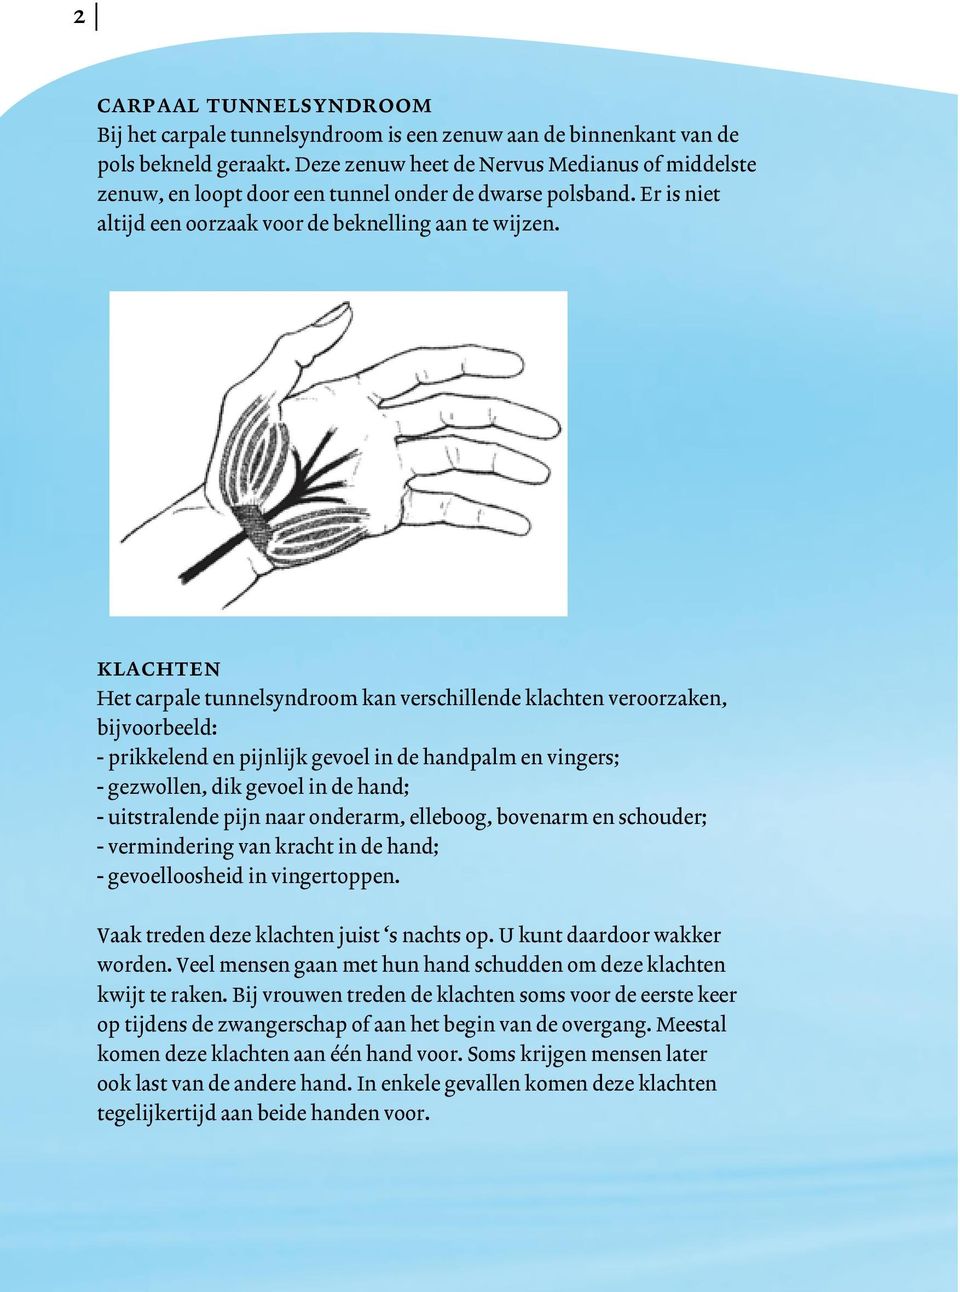 klachten Het carpale tunnelsyndroom kan verschillende klachten veroorzaken, bijvoorbeeld: - prikkelend en pijnlijk gevoel in de handpalm en vingers; - gezwollen, dik gevoel in de hand; - uitstralende